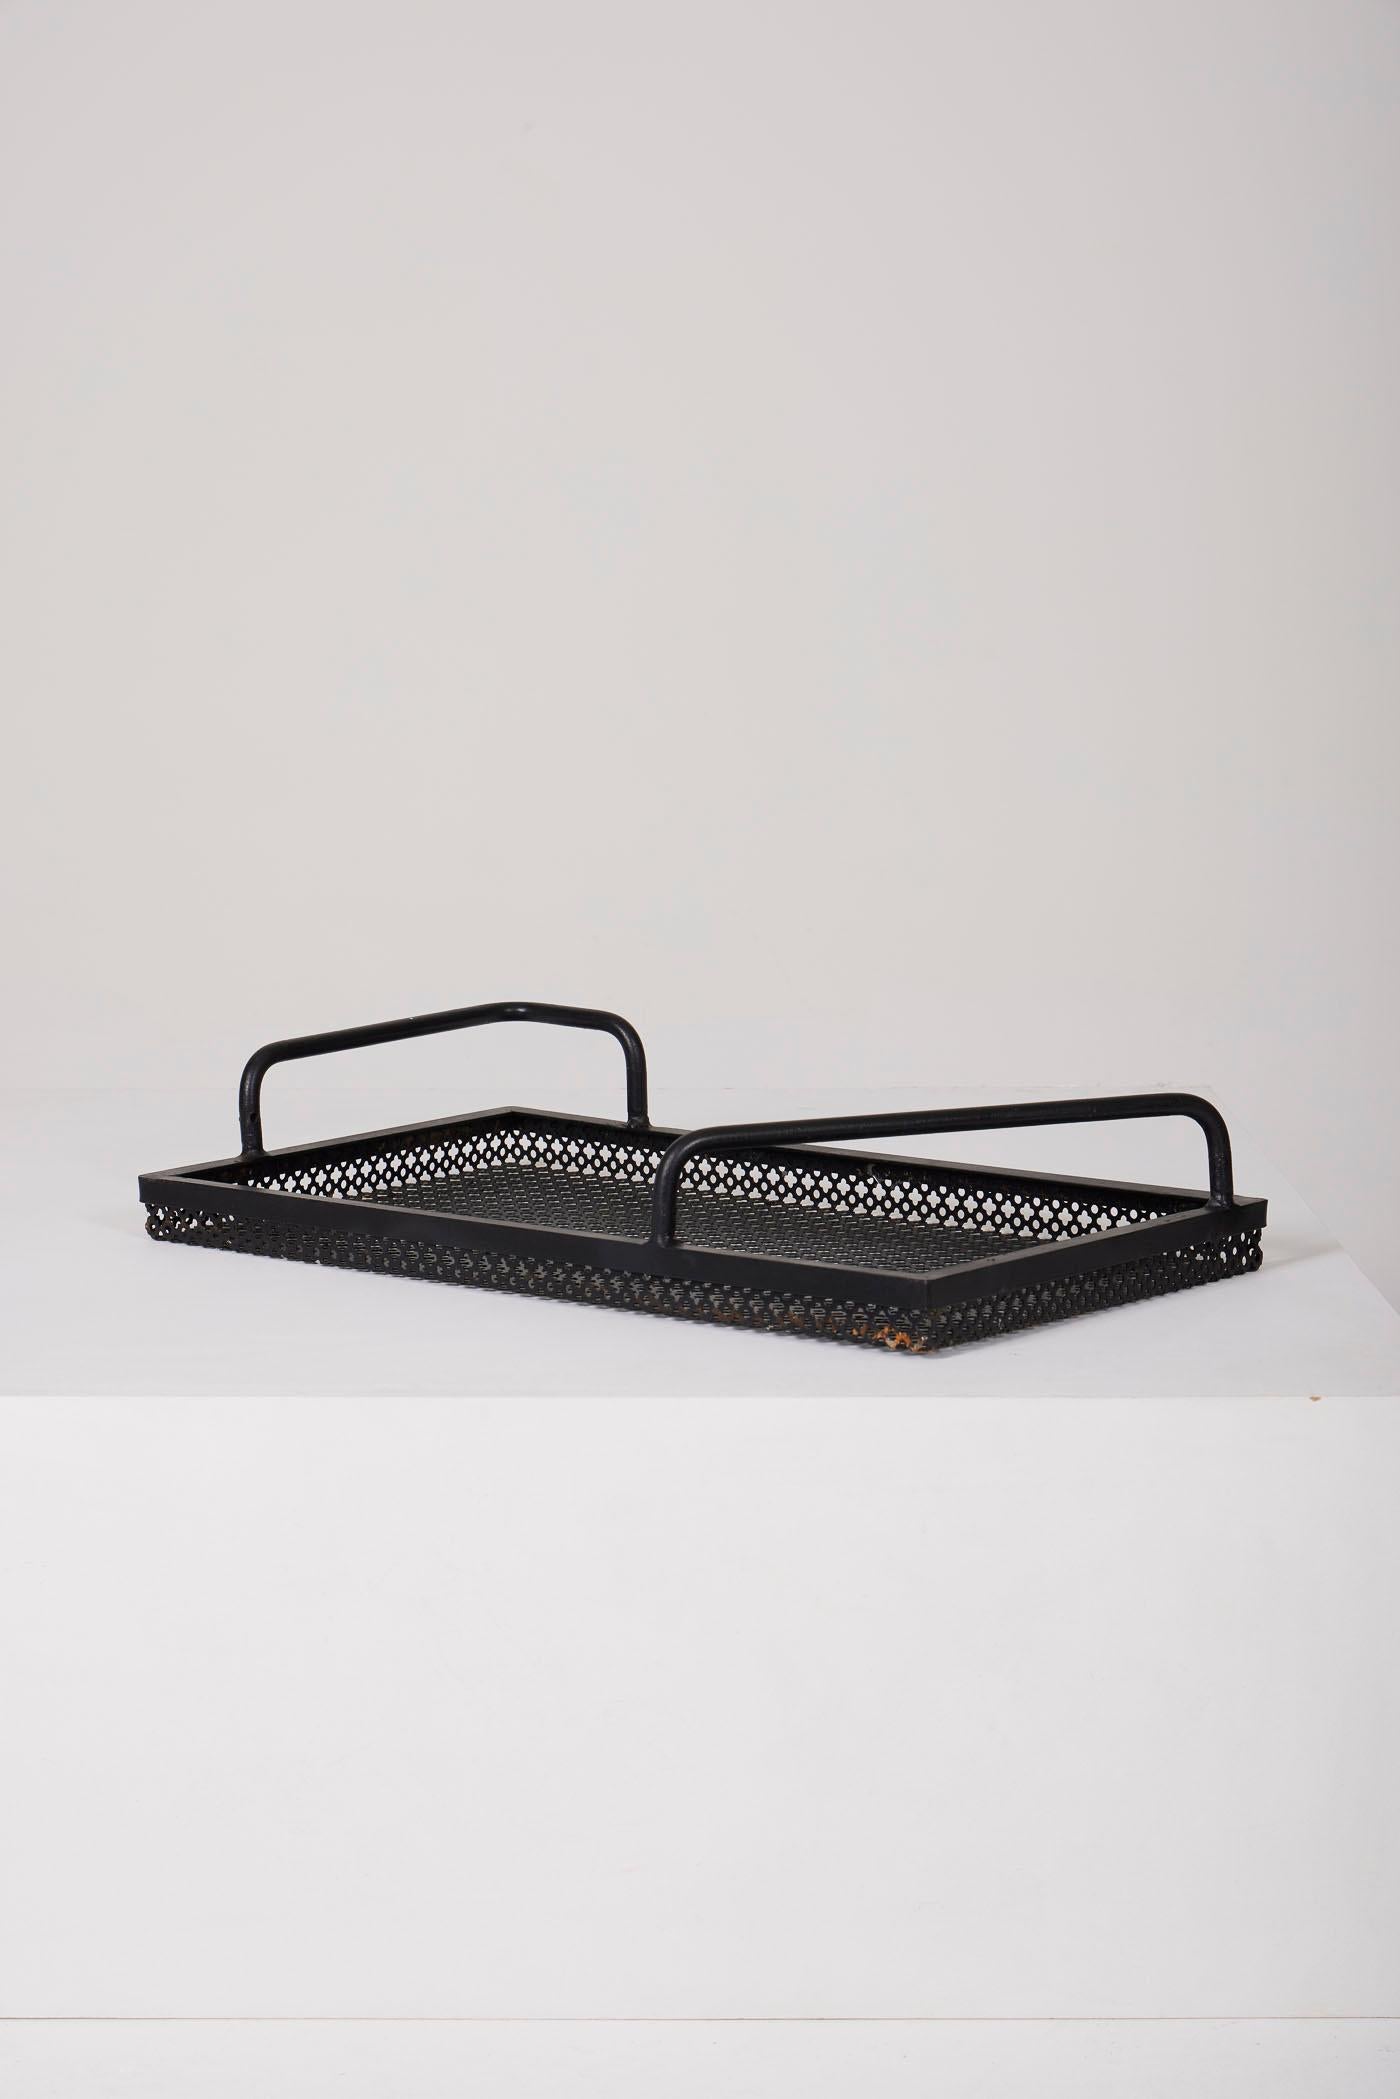 Plateau perforé en métal laqué noir dans le style du designer français Mathieu Matégot, des années 1960. En parfait état.
DV361